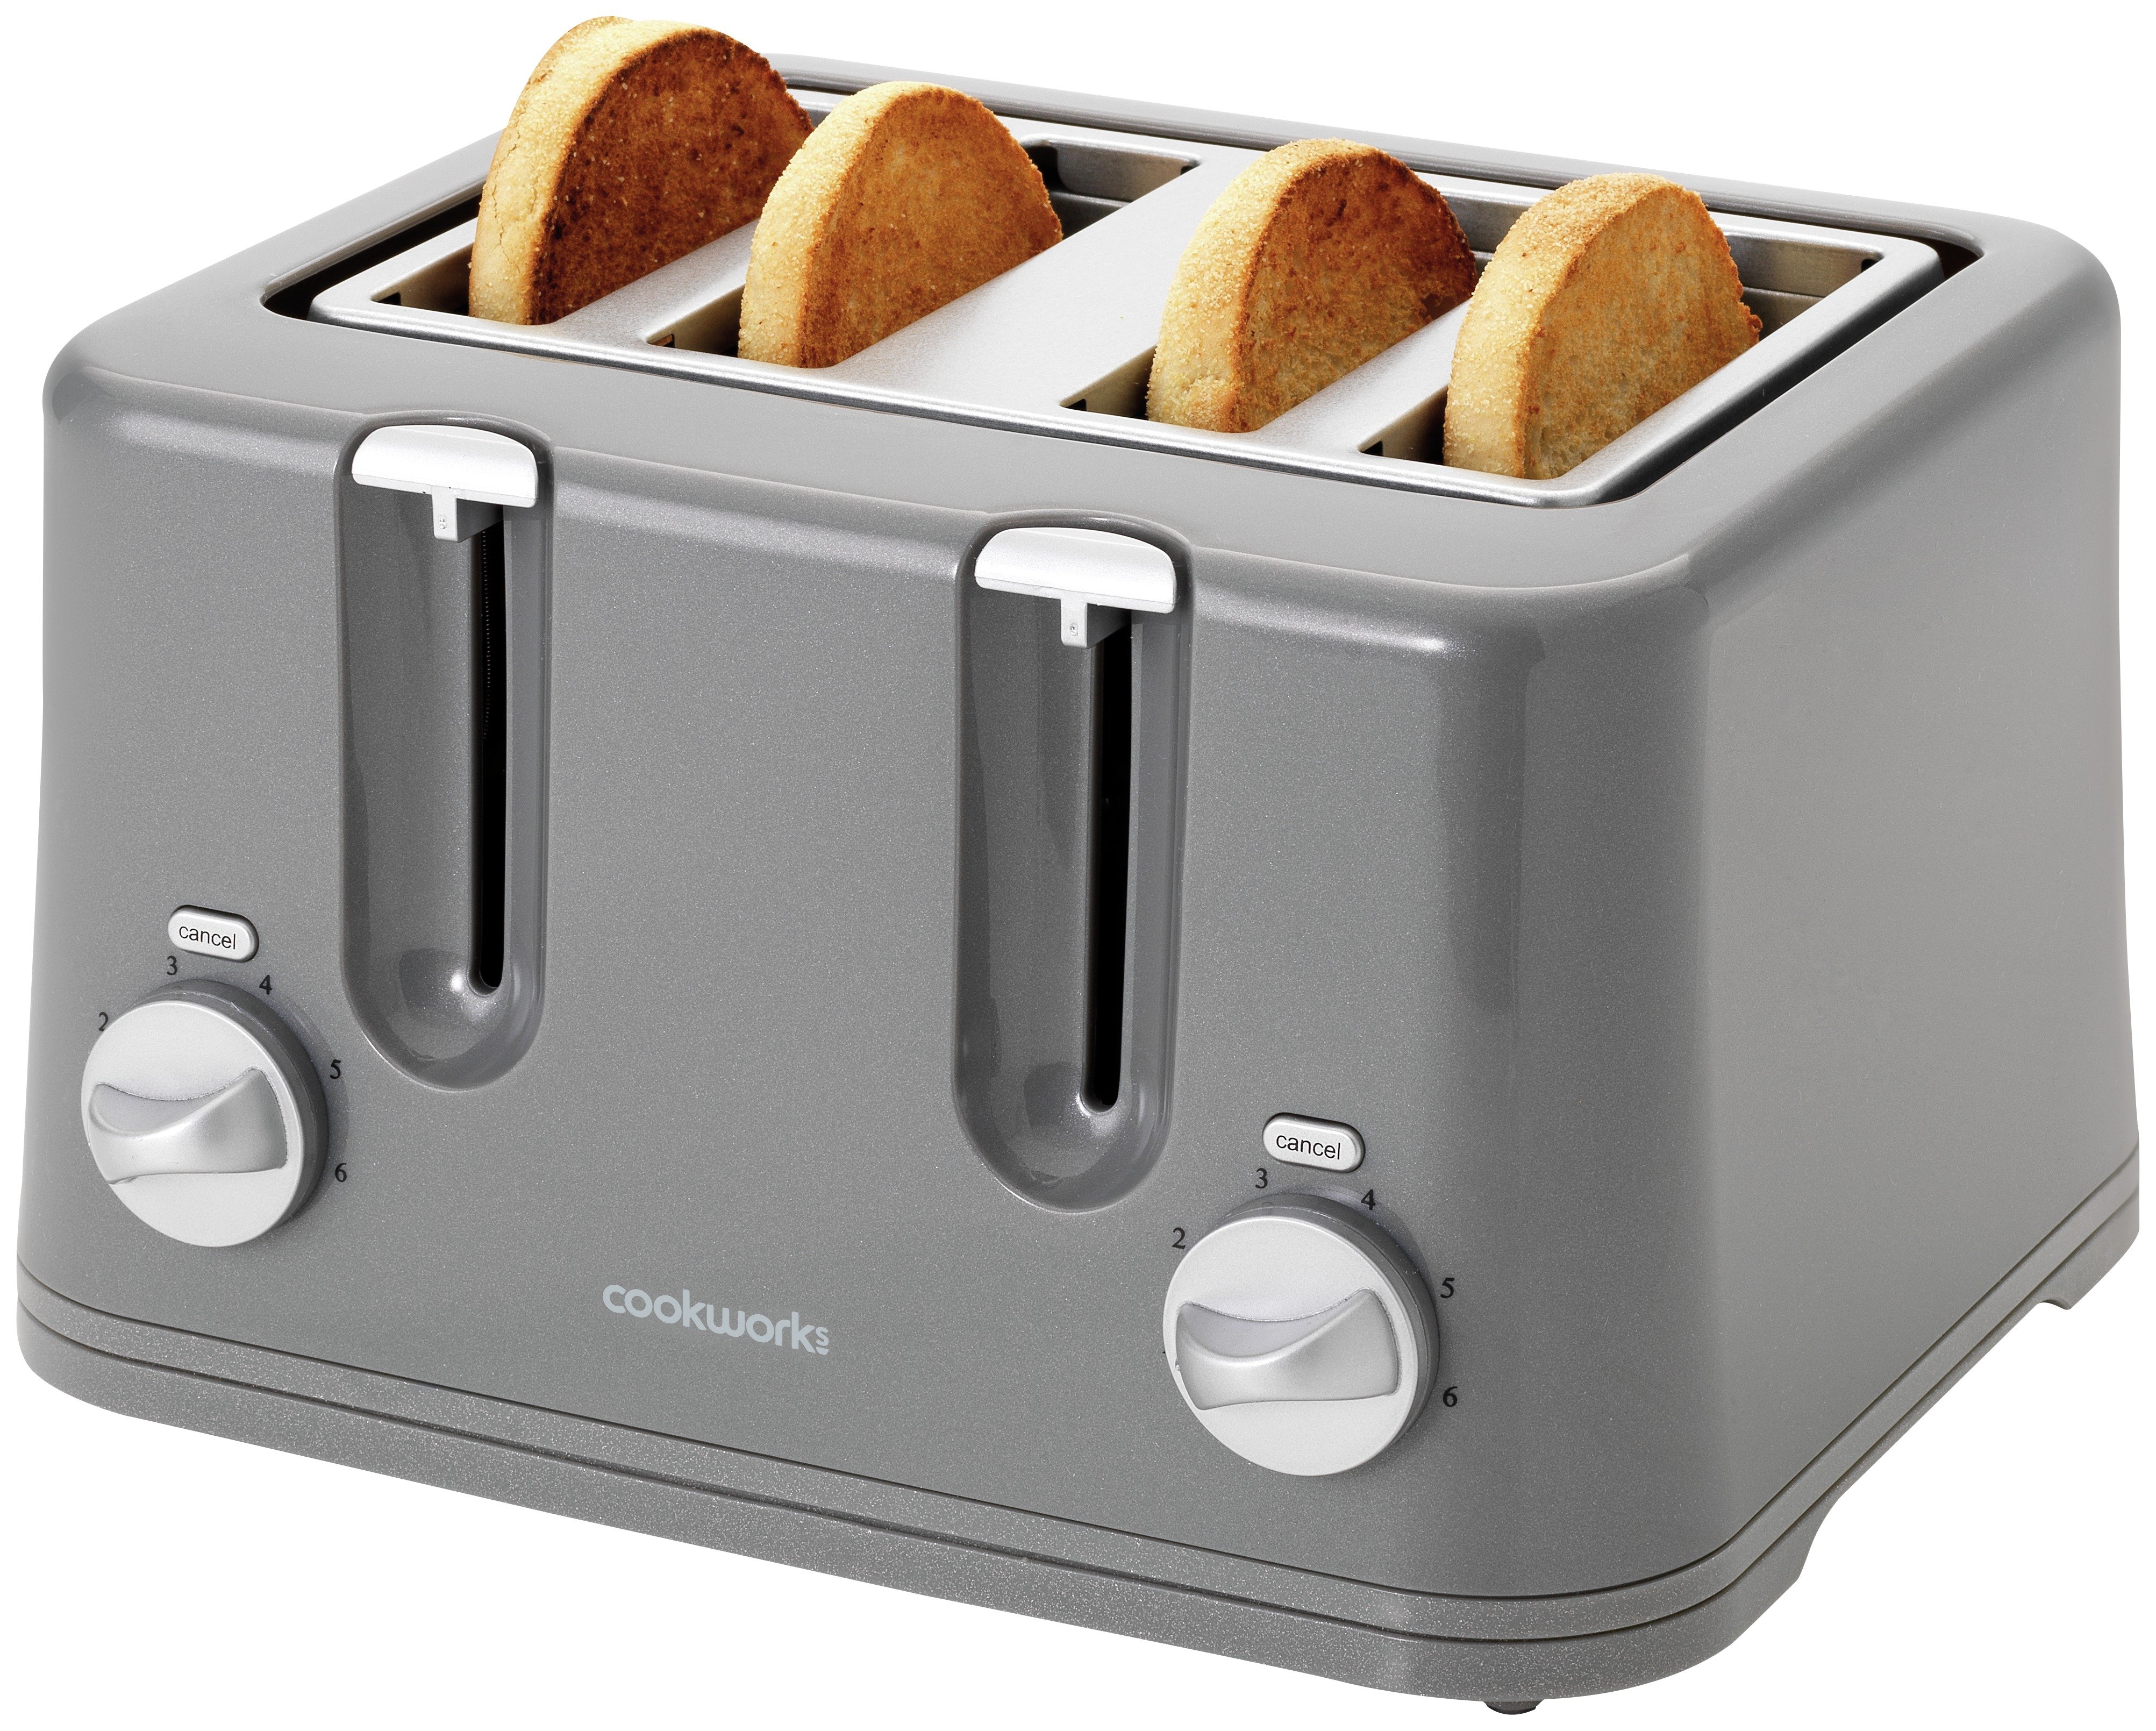 Cookworks 4 Slice Toaster - Grey